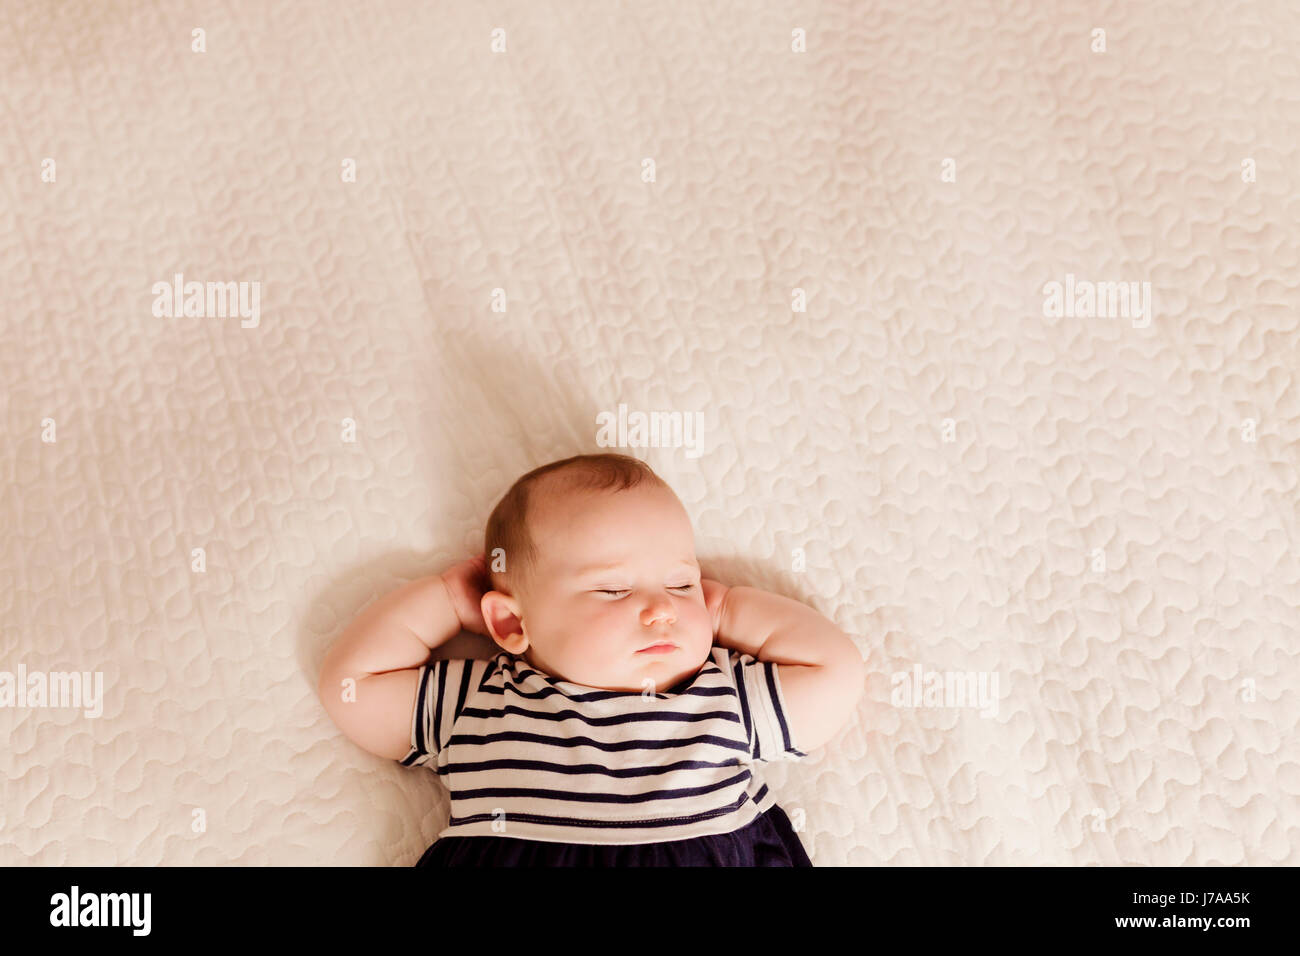 Portrait of baby girl sleeping on bed Stock Photo